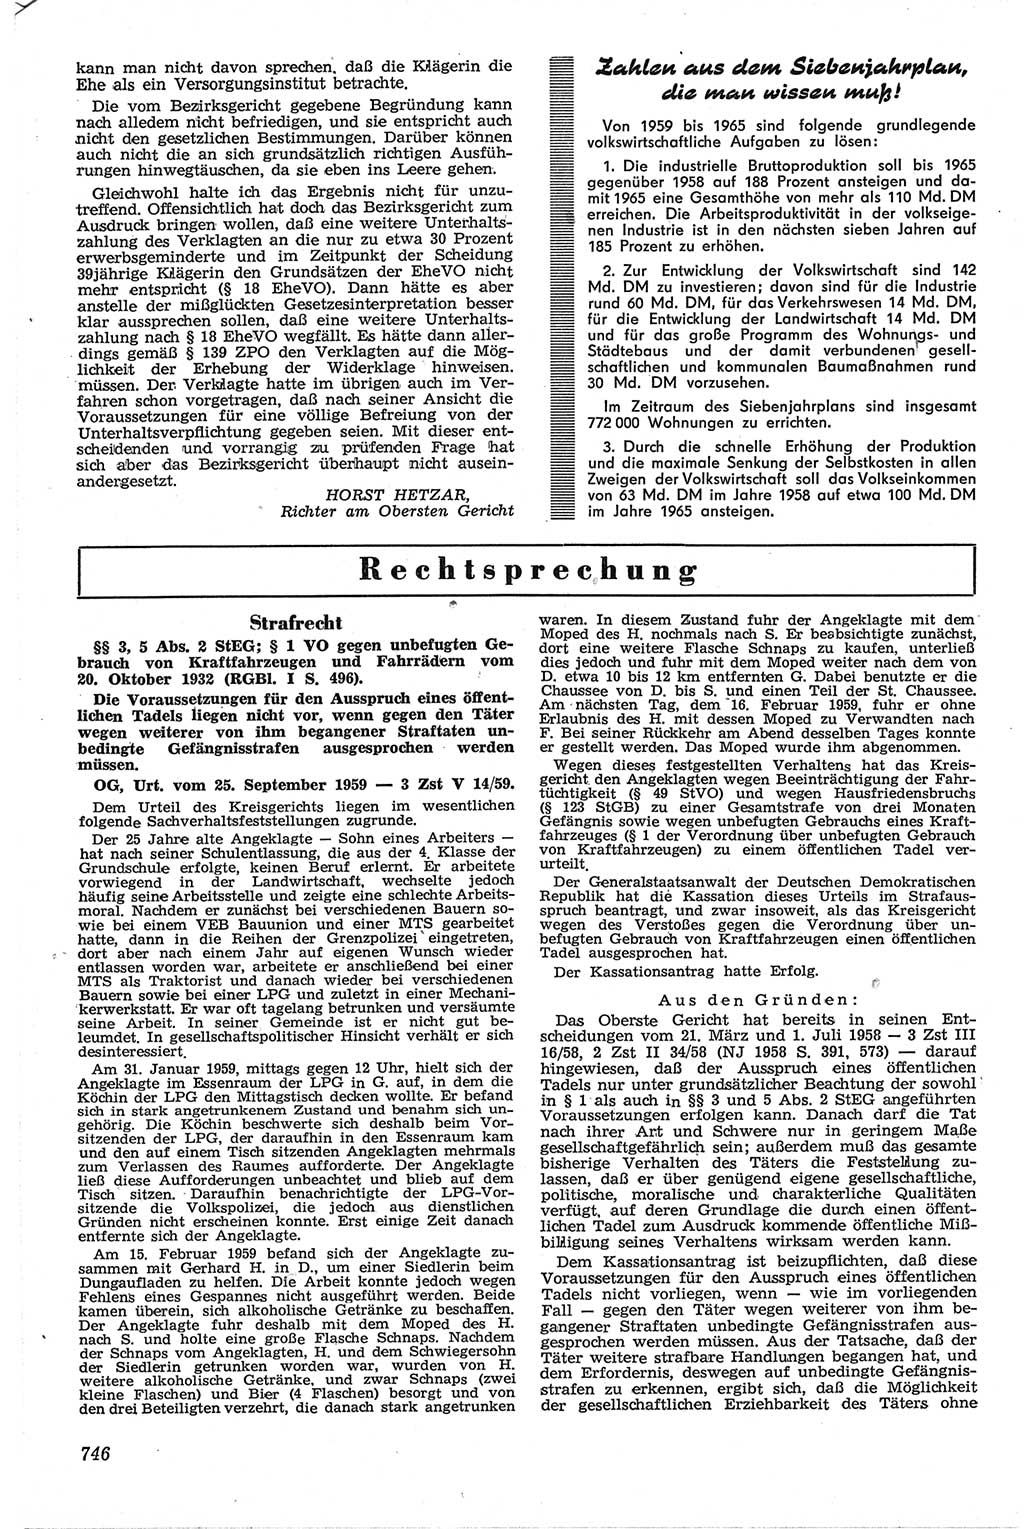 Neue Justiz (NJ), Zeitschrift für Recht und Rechtswissenschaft [Deutsche Demokratische Republik (DDR)], 13. Jahrgang 1959, Seite 746 (NJ DDR 1959, S. 746)